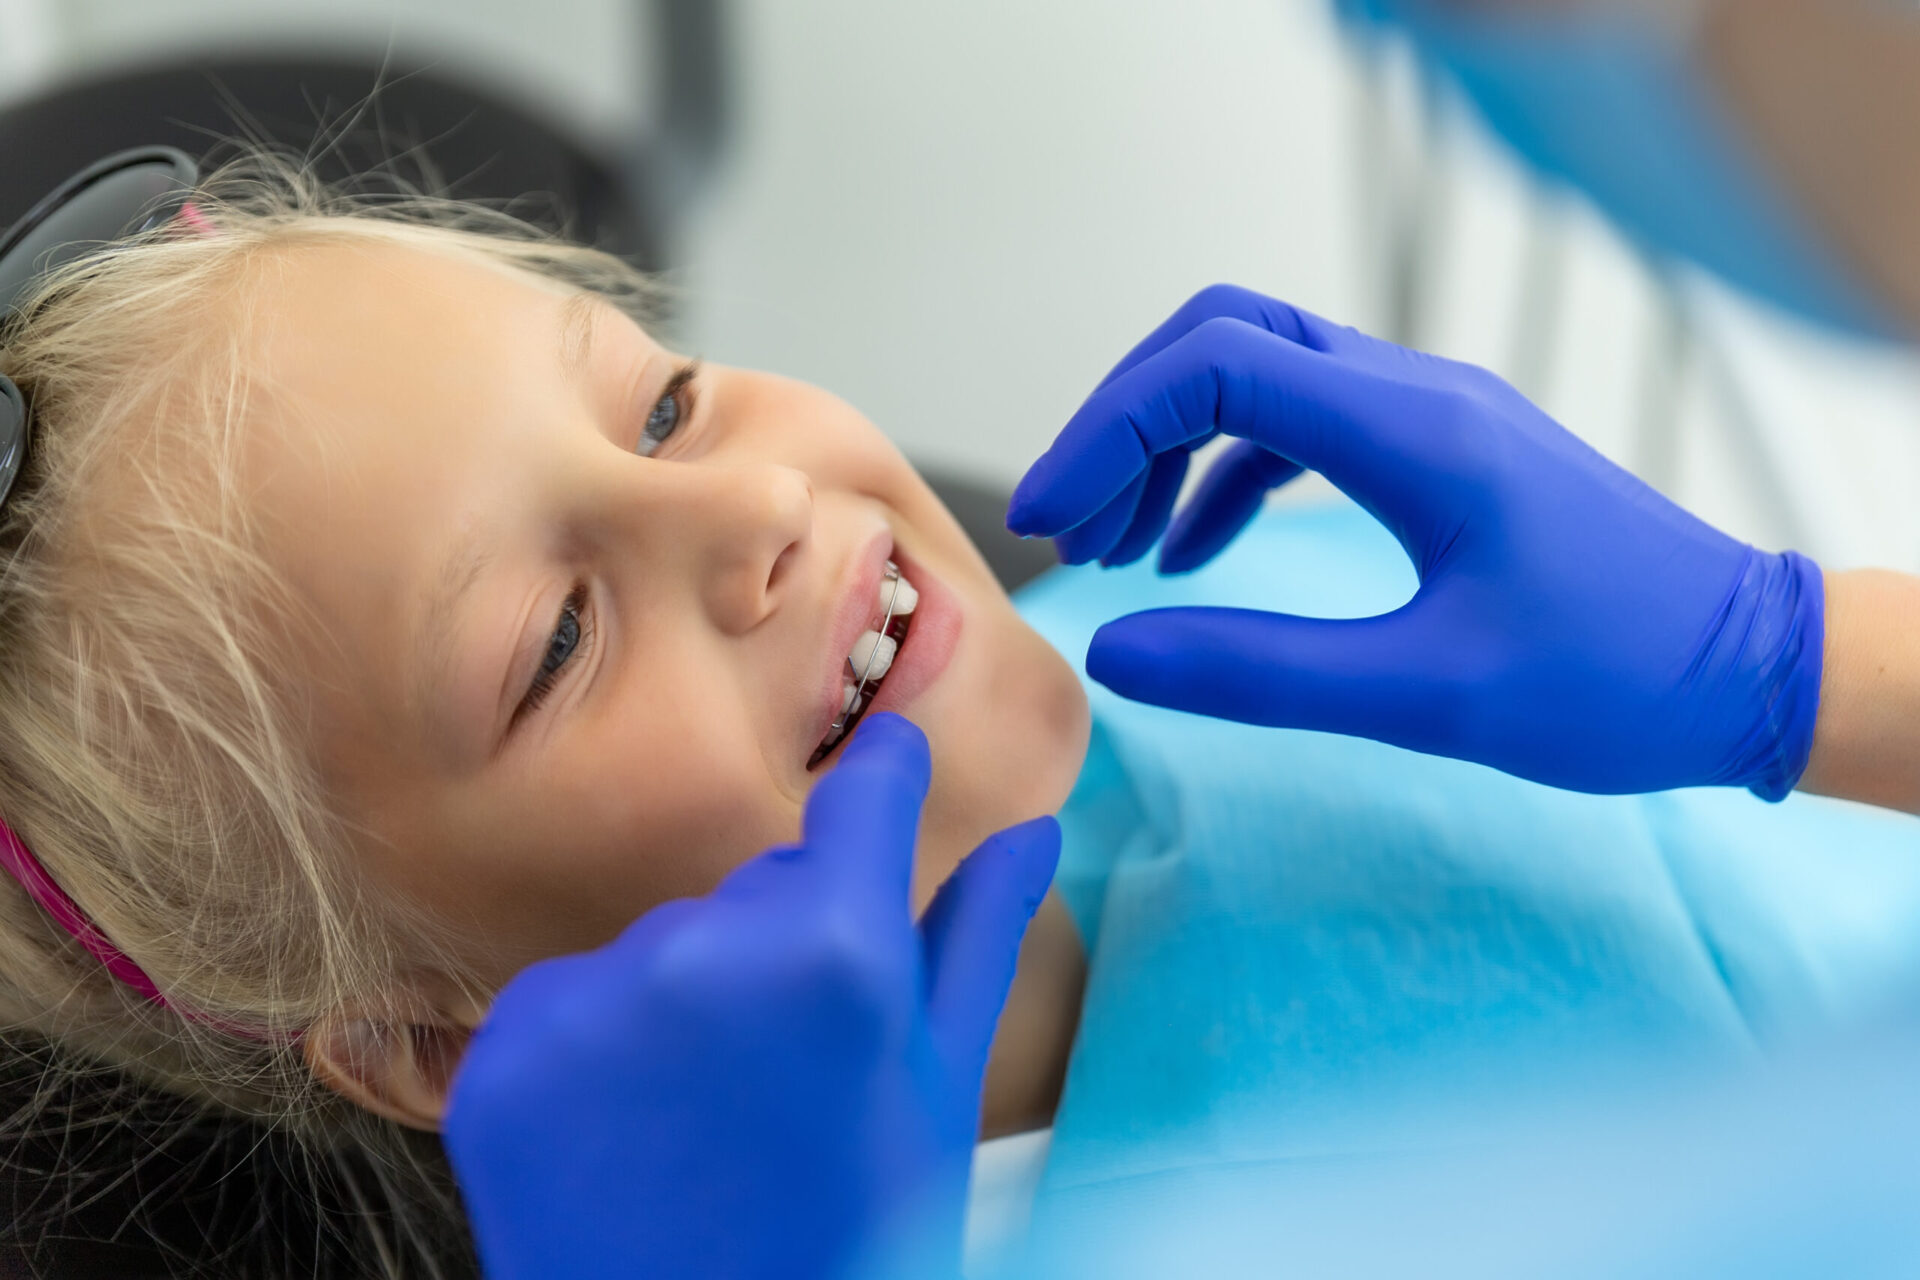 Mała urocza, szczęśliwa, blondynka dziewczynka pochodzenia kaukaskiego u dentysty podczas wizyty kontrolnej związanej z aparatami ortodontycznymi. Dziecko podczas wizyty u ortodonty i leczenia jamy ustnej. Opieka i higiena jamy ustnej dzieci.